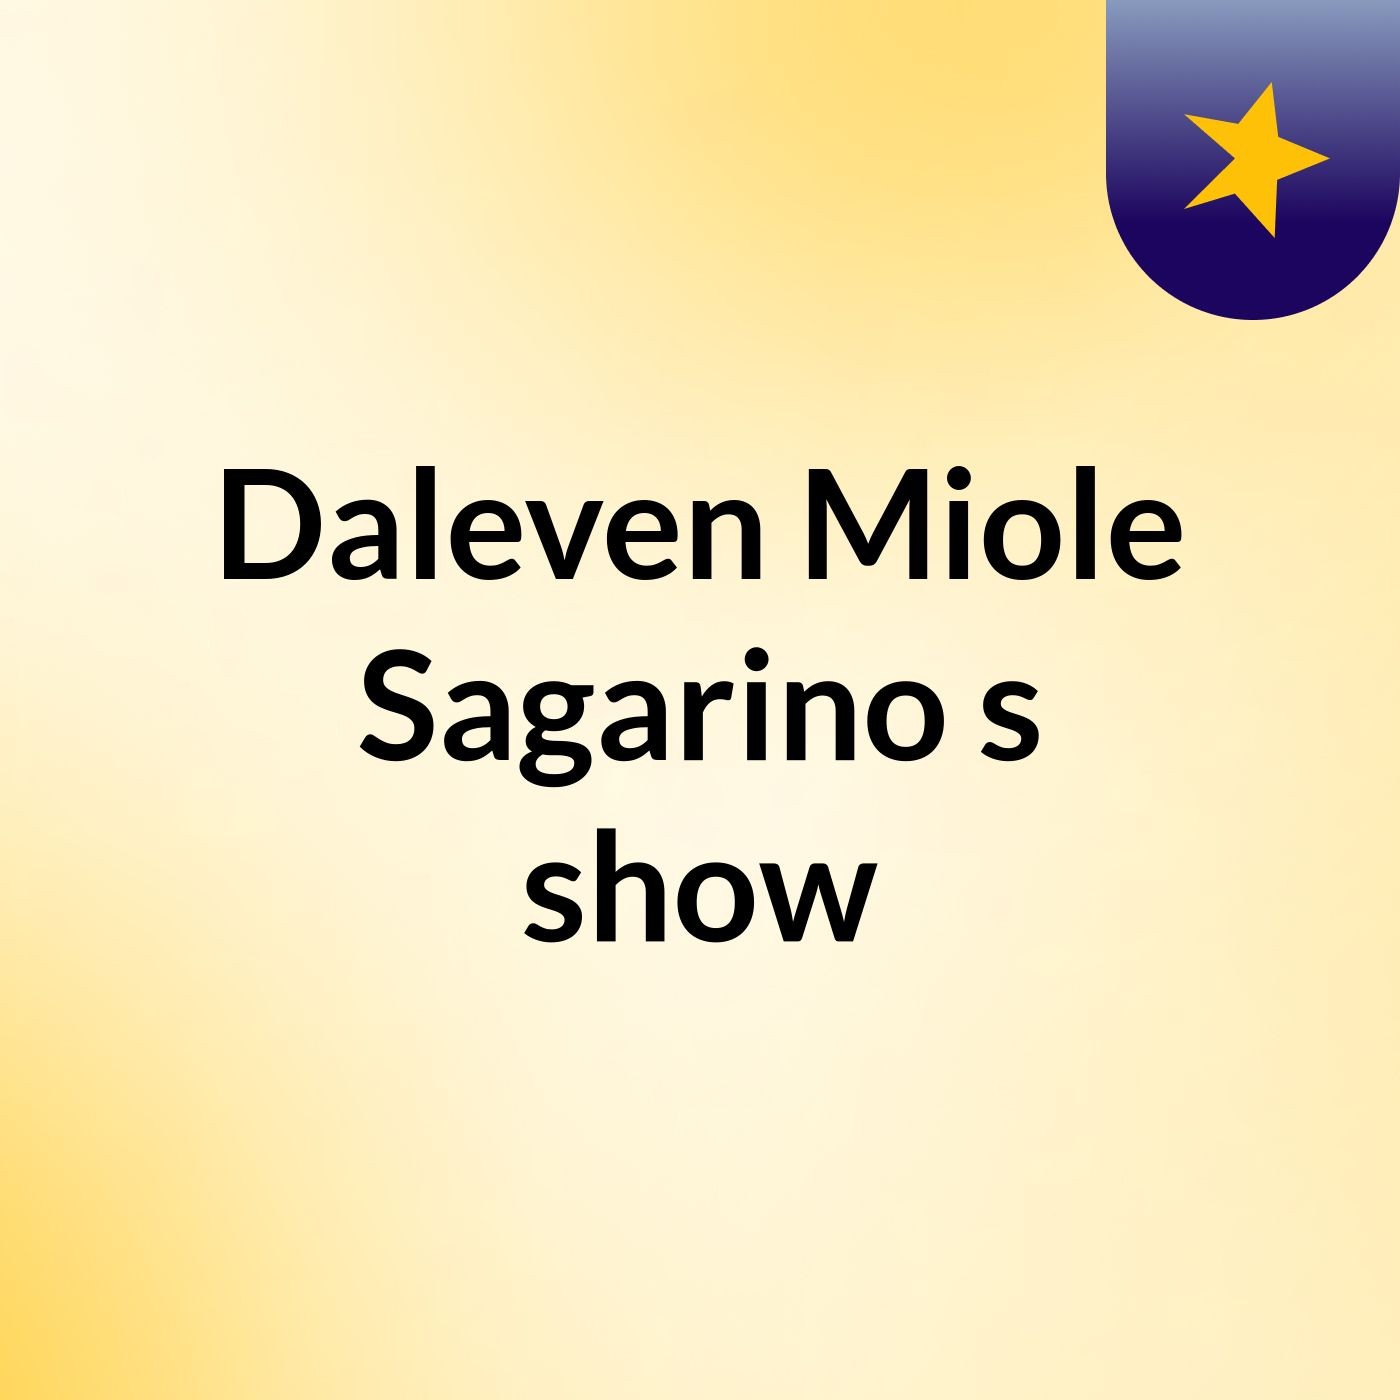 Daleven Miole Sagarino's show